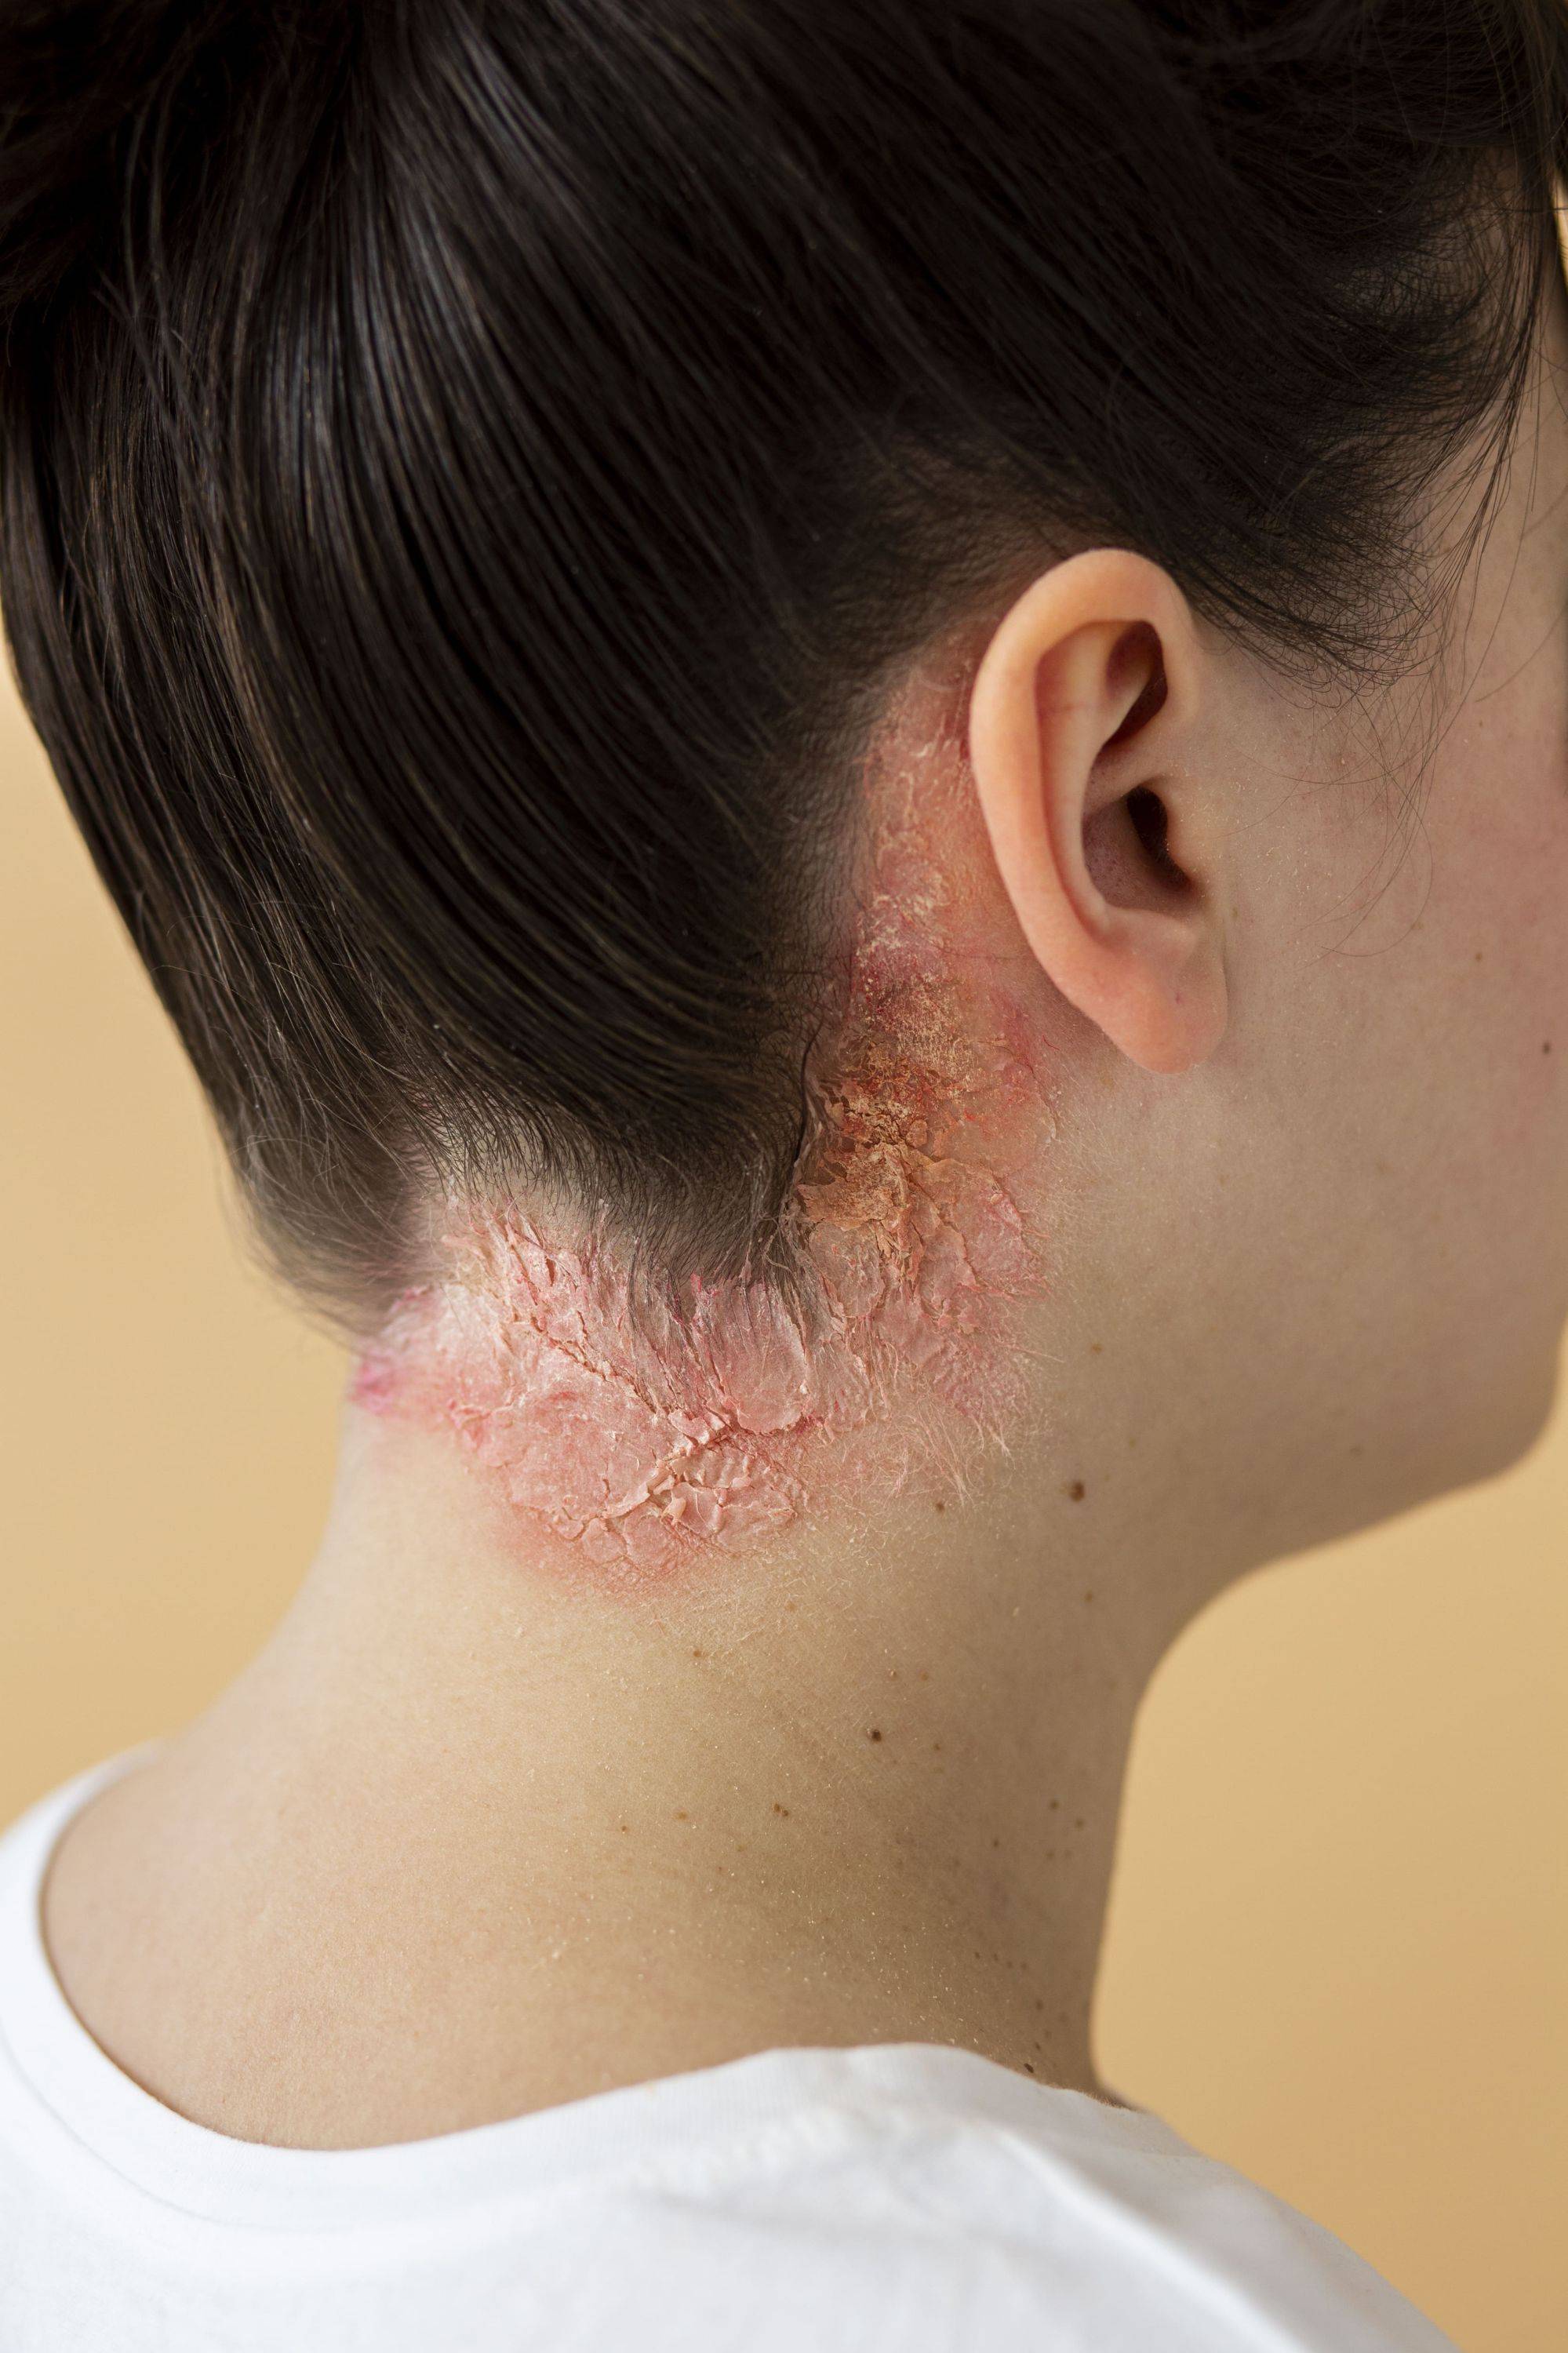 ppsoriasis-eczema-on-neck-of-patient.jpg